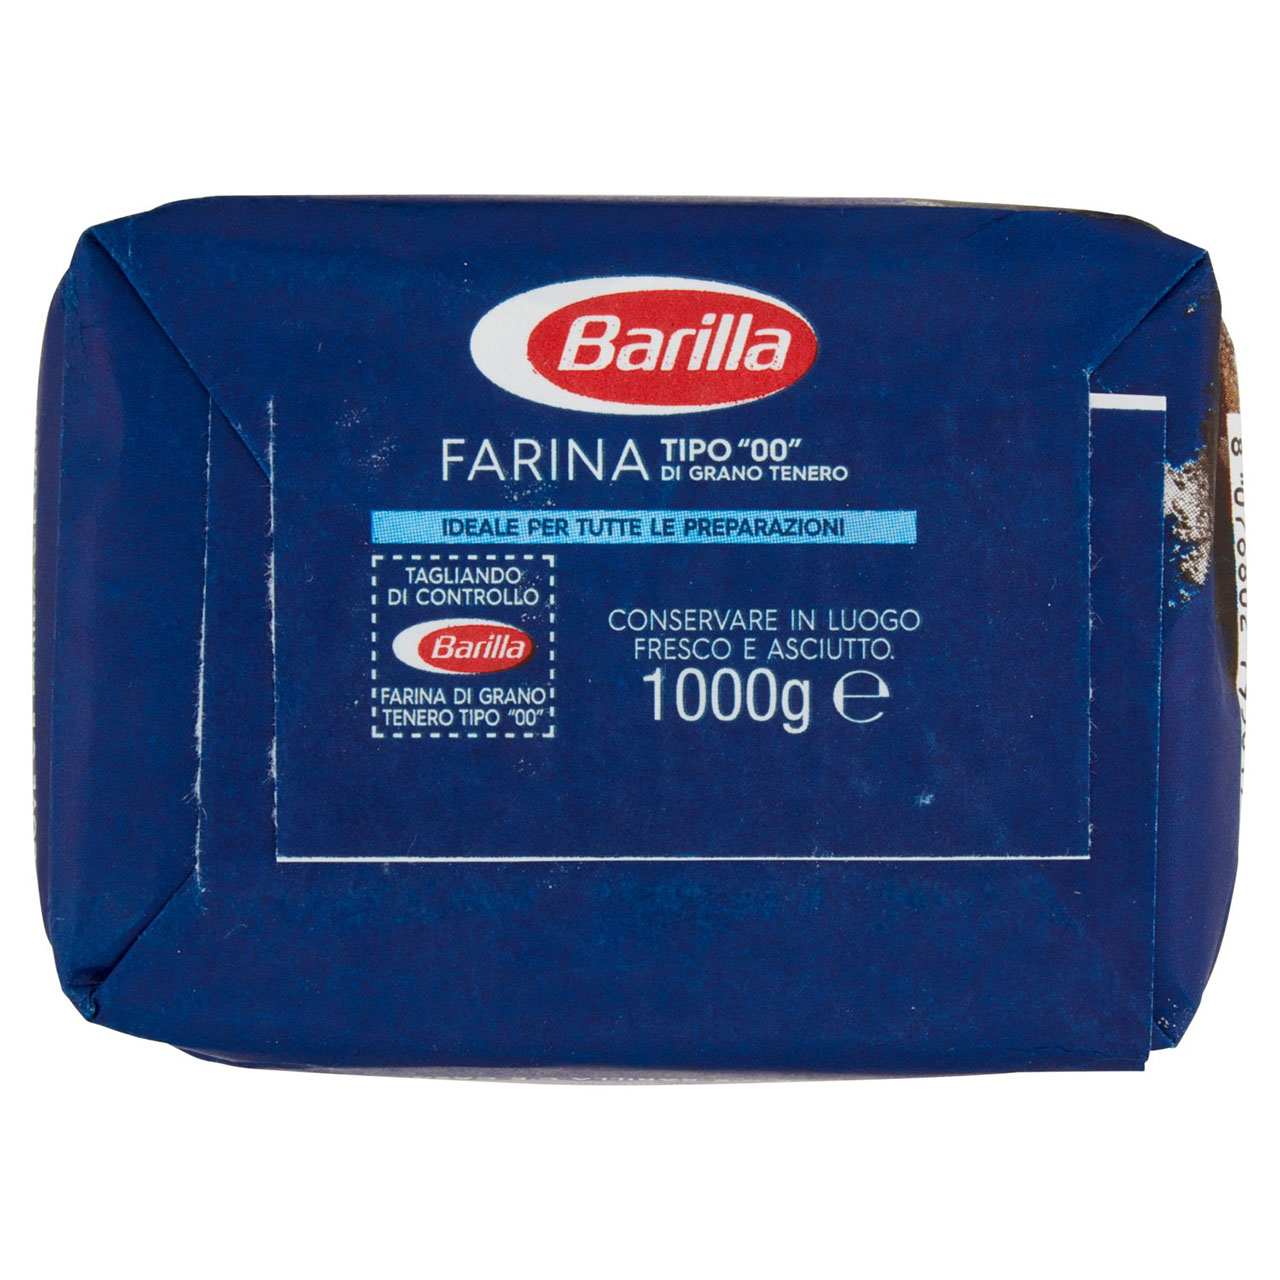 Barilla Farina tipo "00" 1000g in vendita online